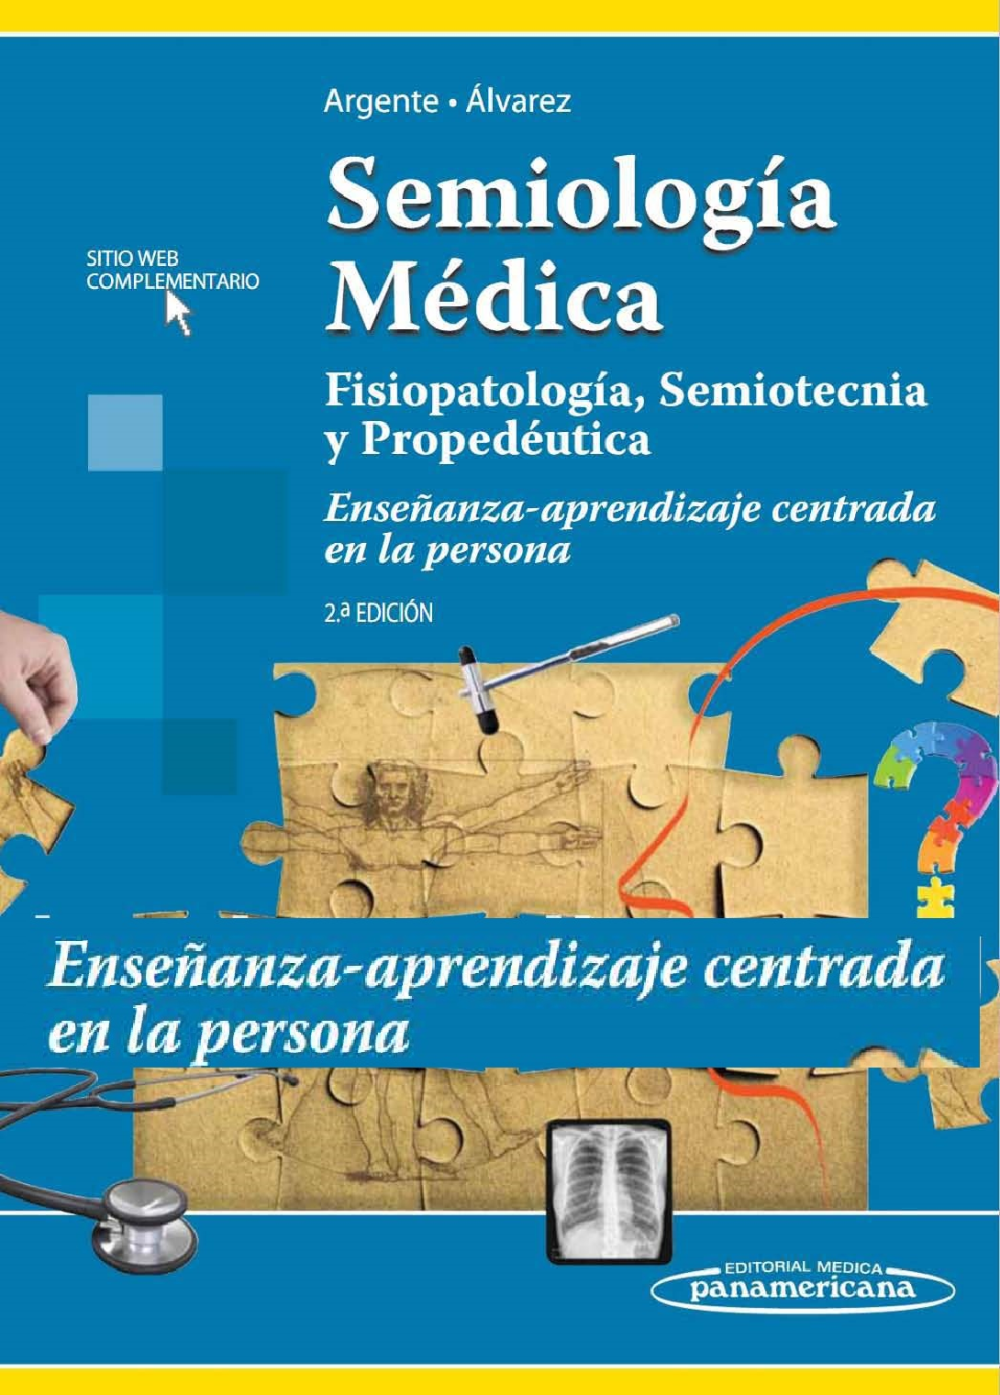 Semiologia Medica Argente 2ed - pdf 